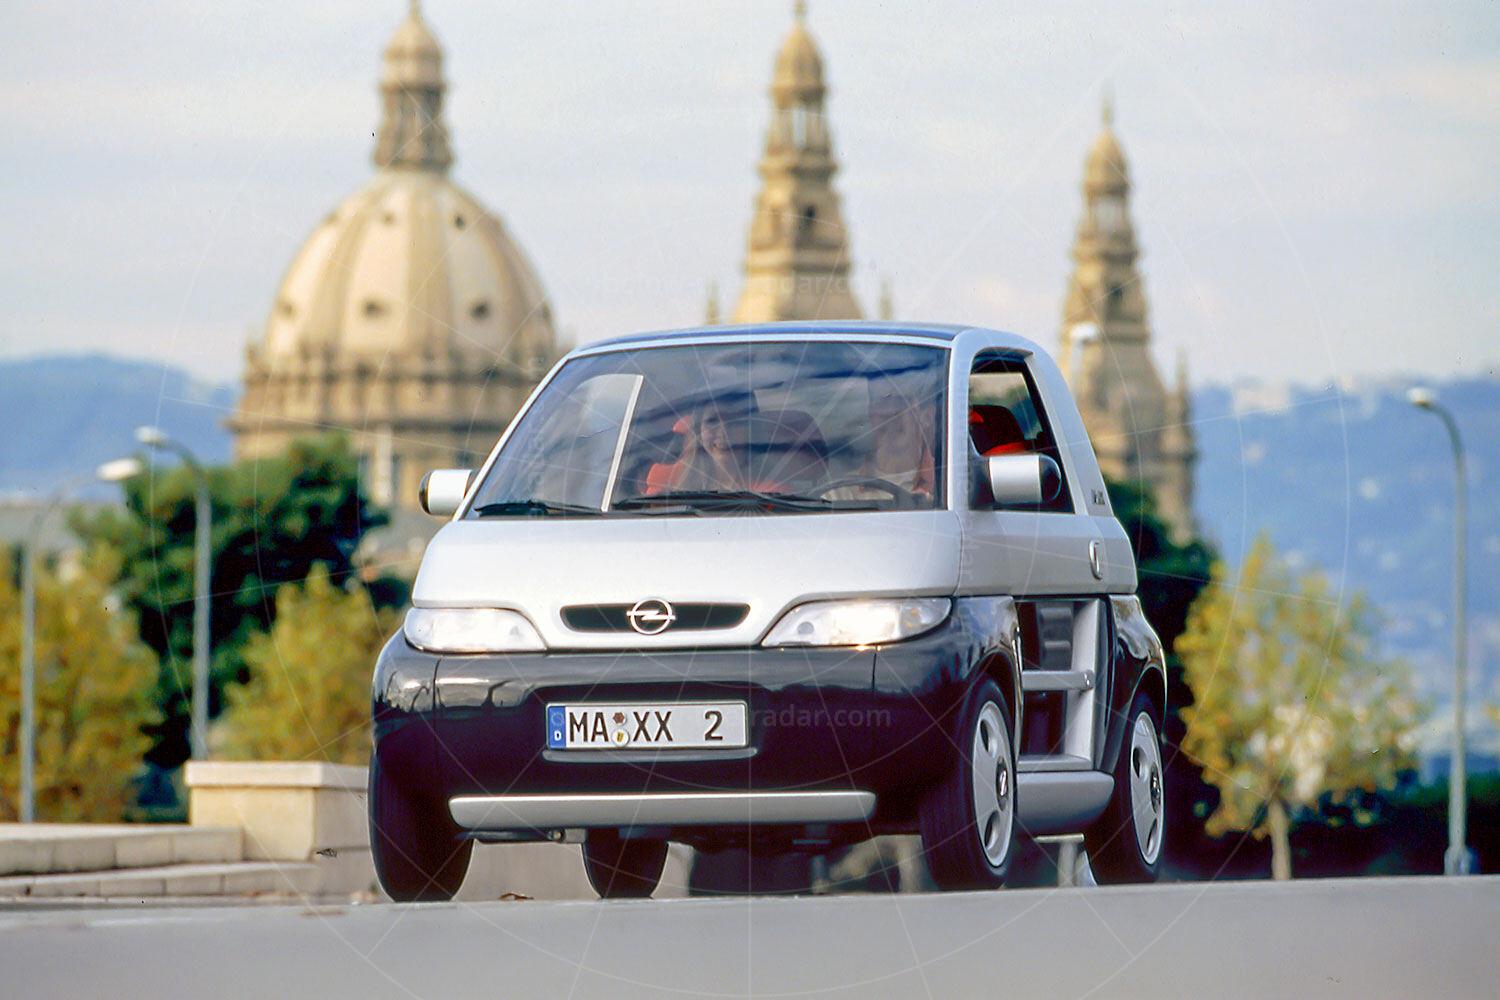 Opel Maxx two-door Pic: GM | Opel Maxx two-door